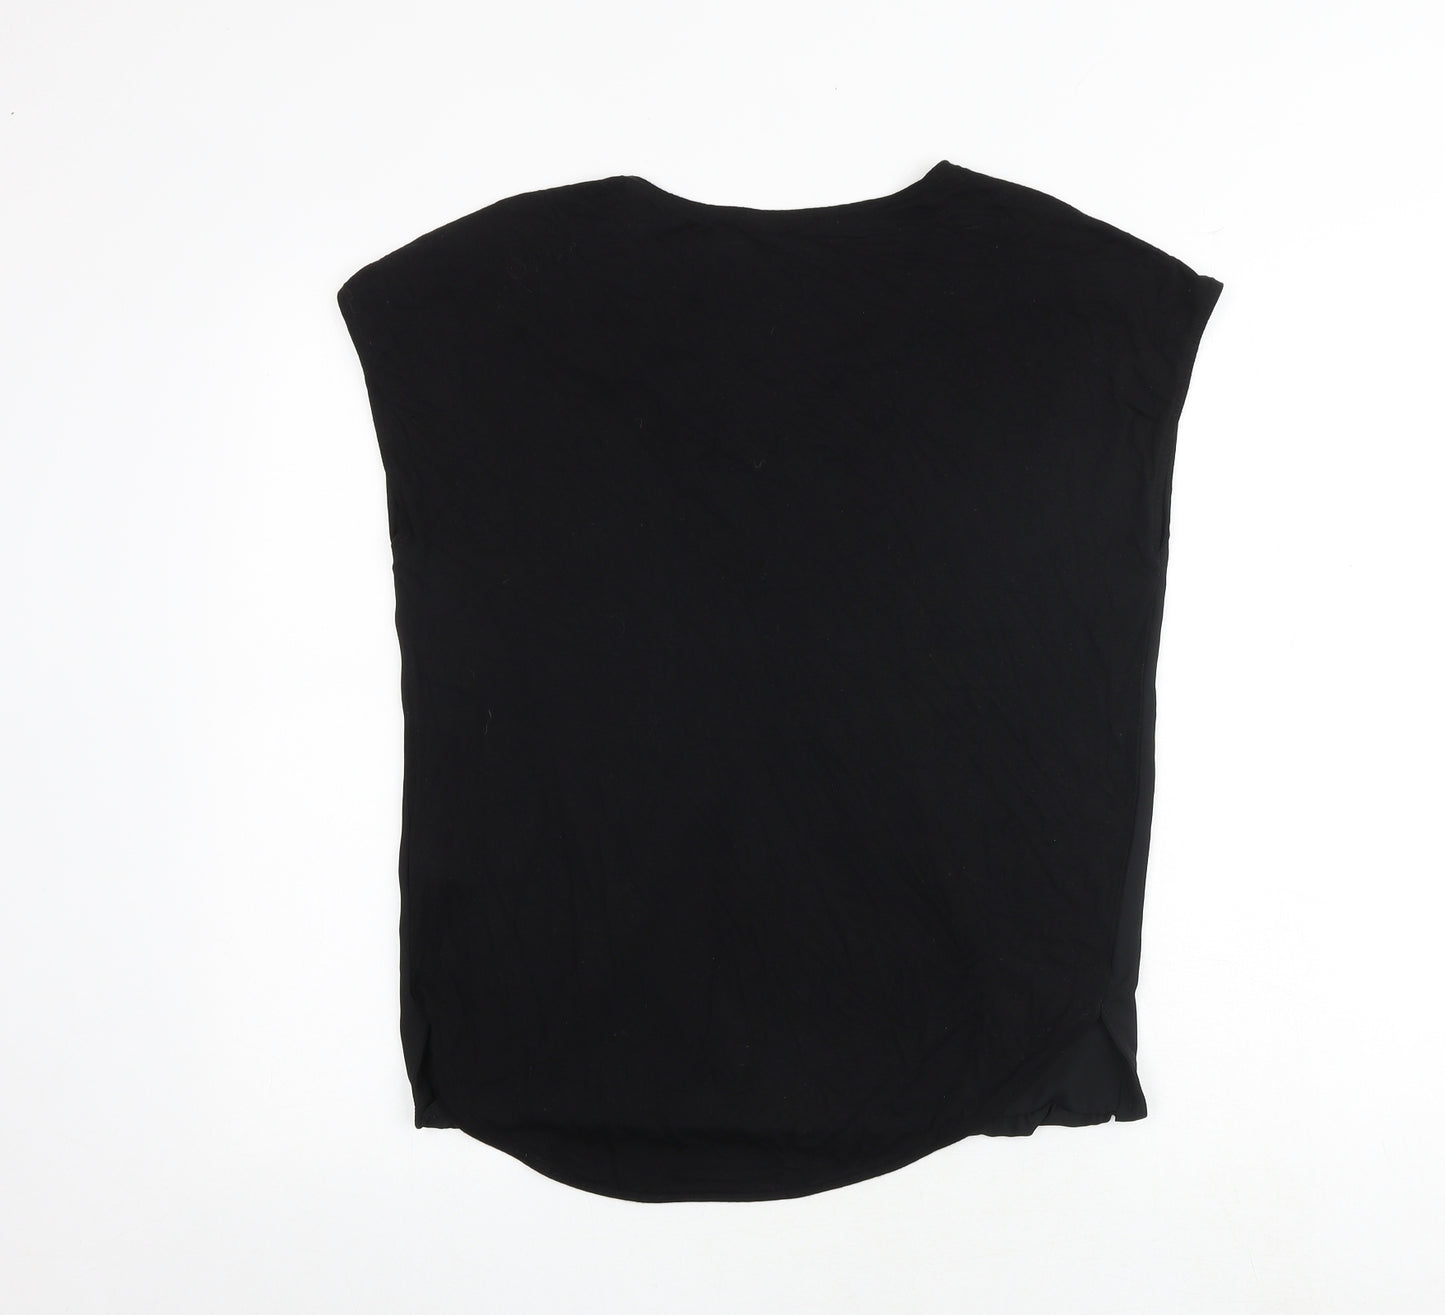 Marks and Spencer Womens Black Polyester Basic Blouse Size 10 V-Neck